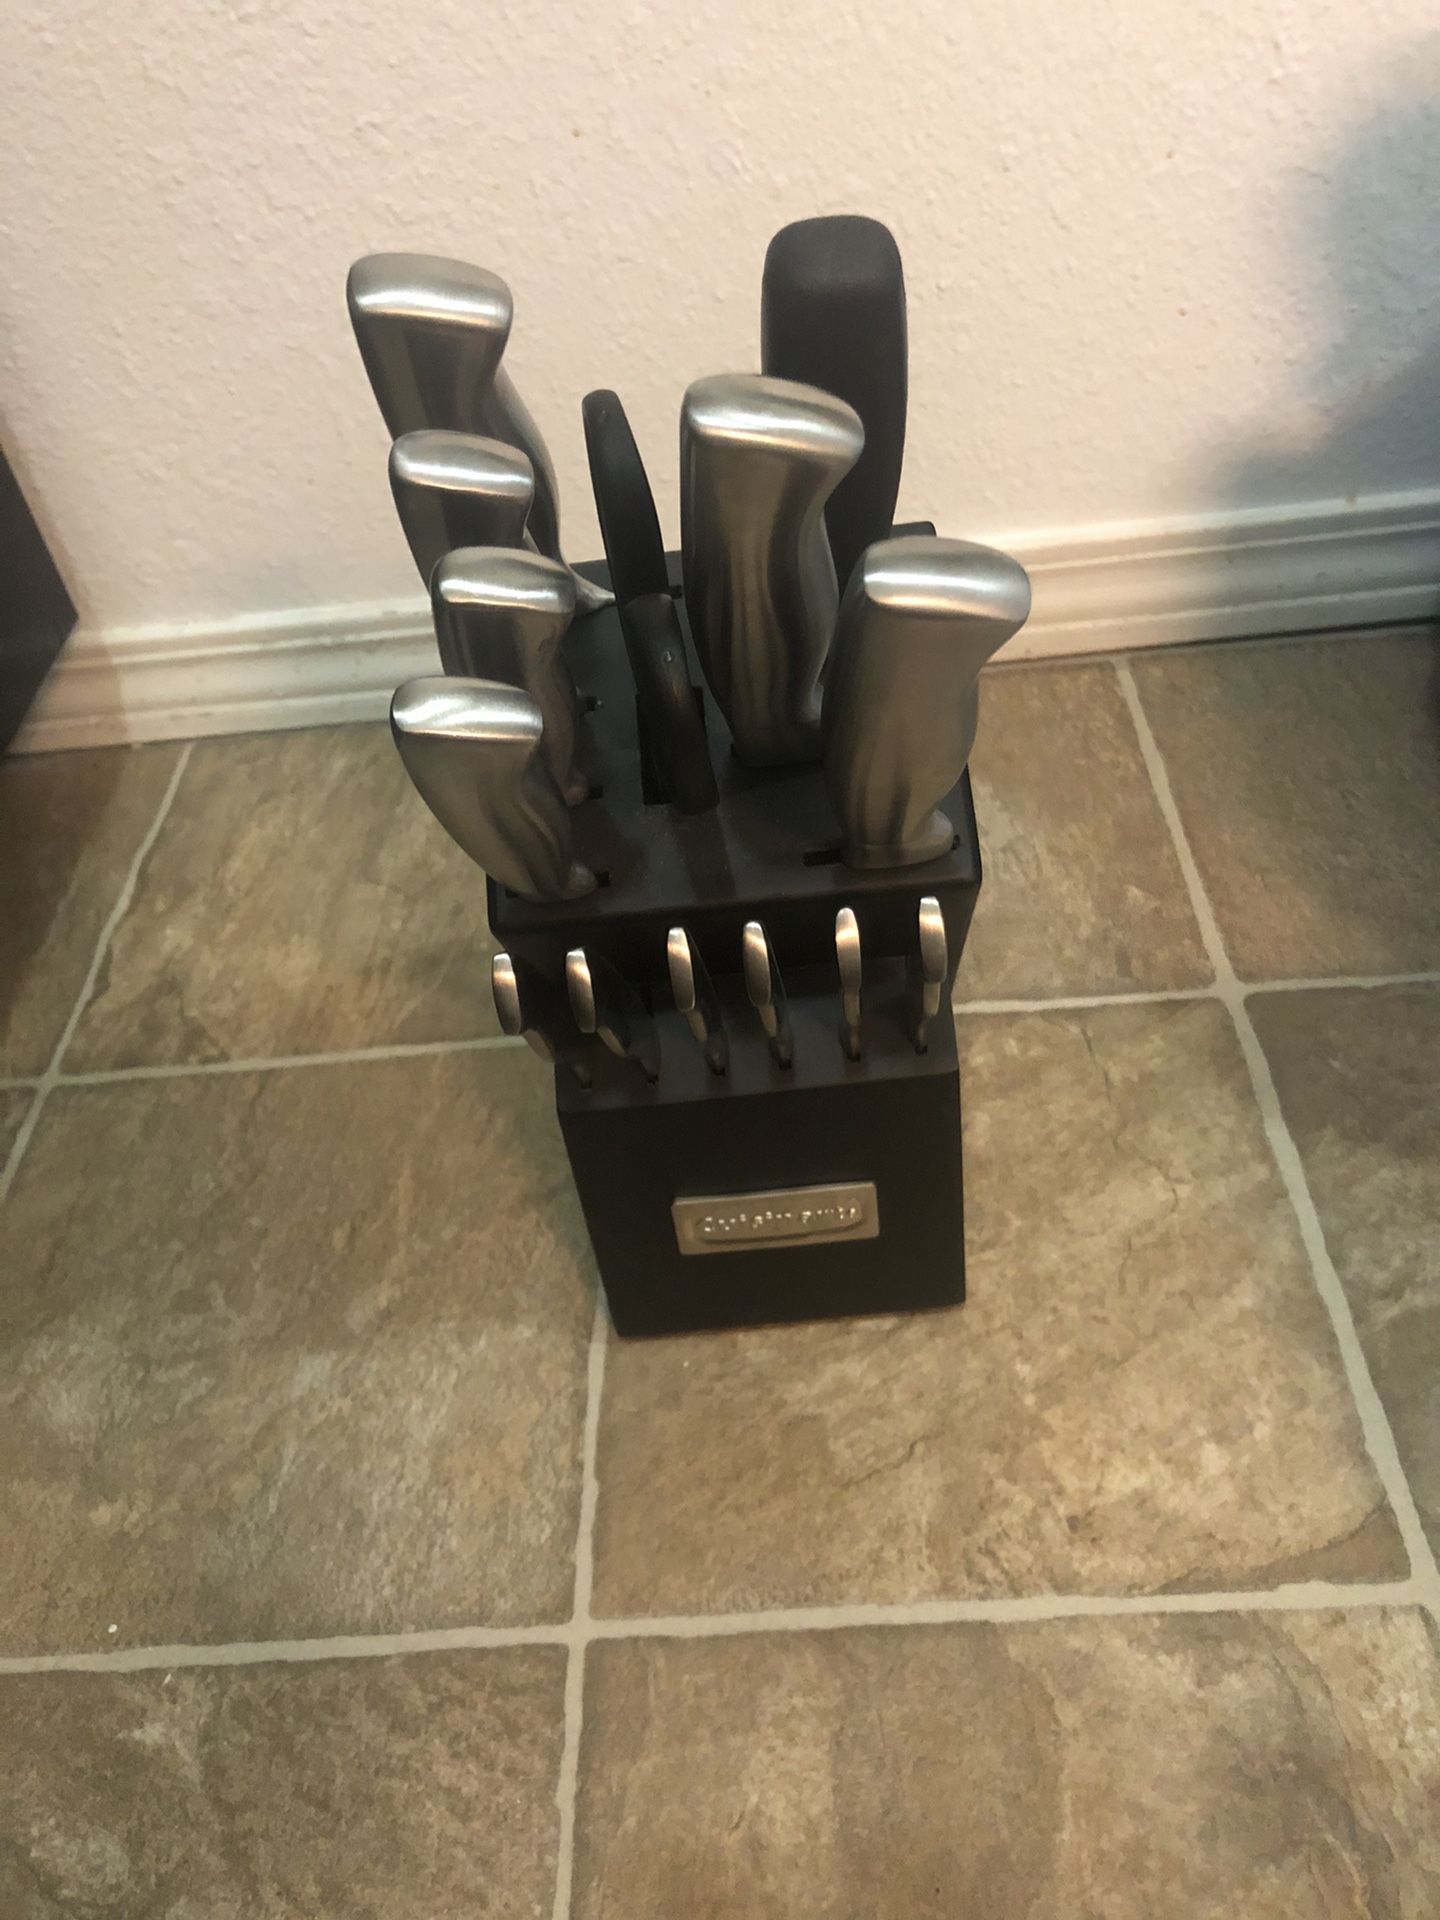 Full kitchen knife set